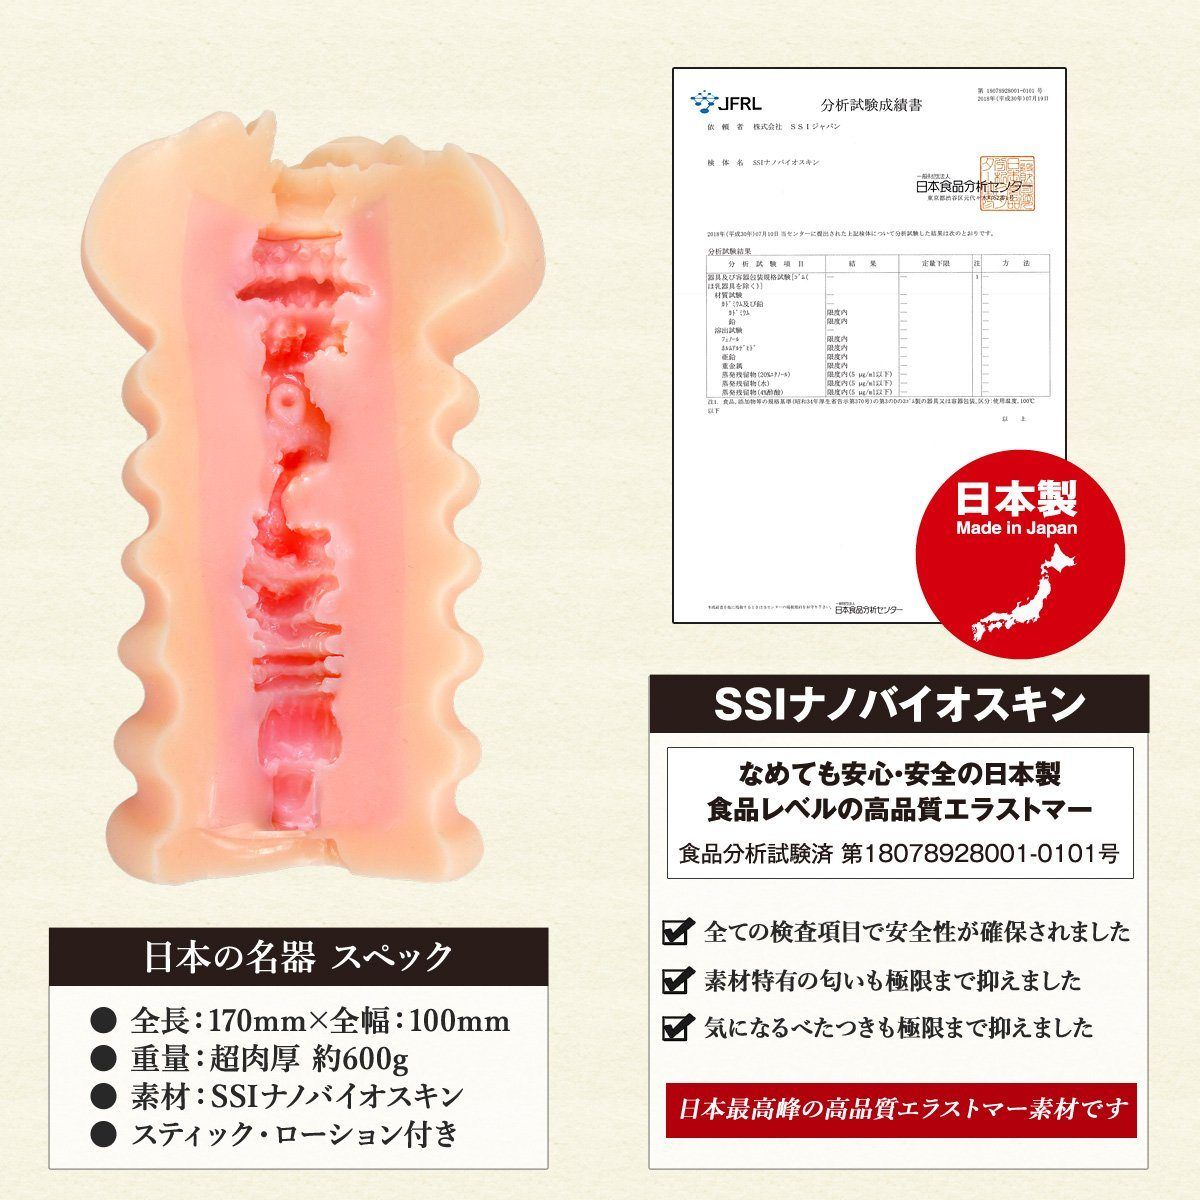 SSI JAPAN 【極匠】日本の名器 数の子天井 超肉厚多重激凸點吸盤紋路飛機杯 飛機杯 購買